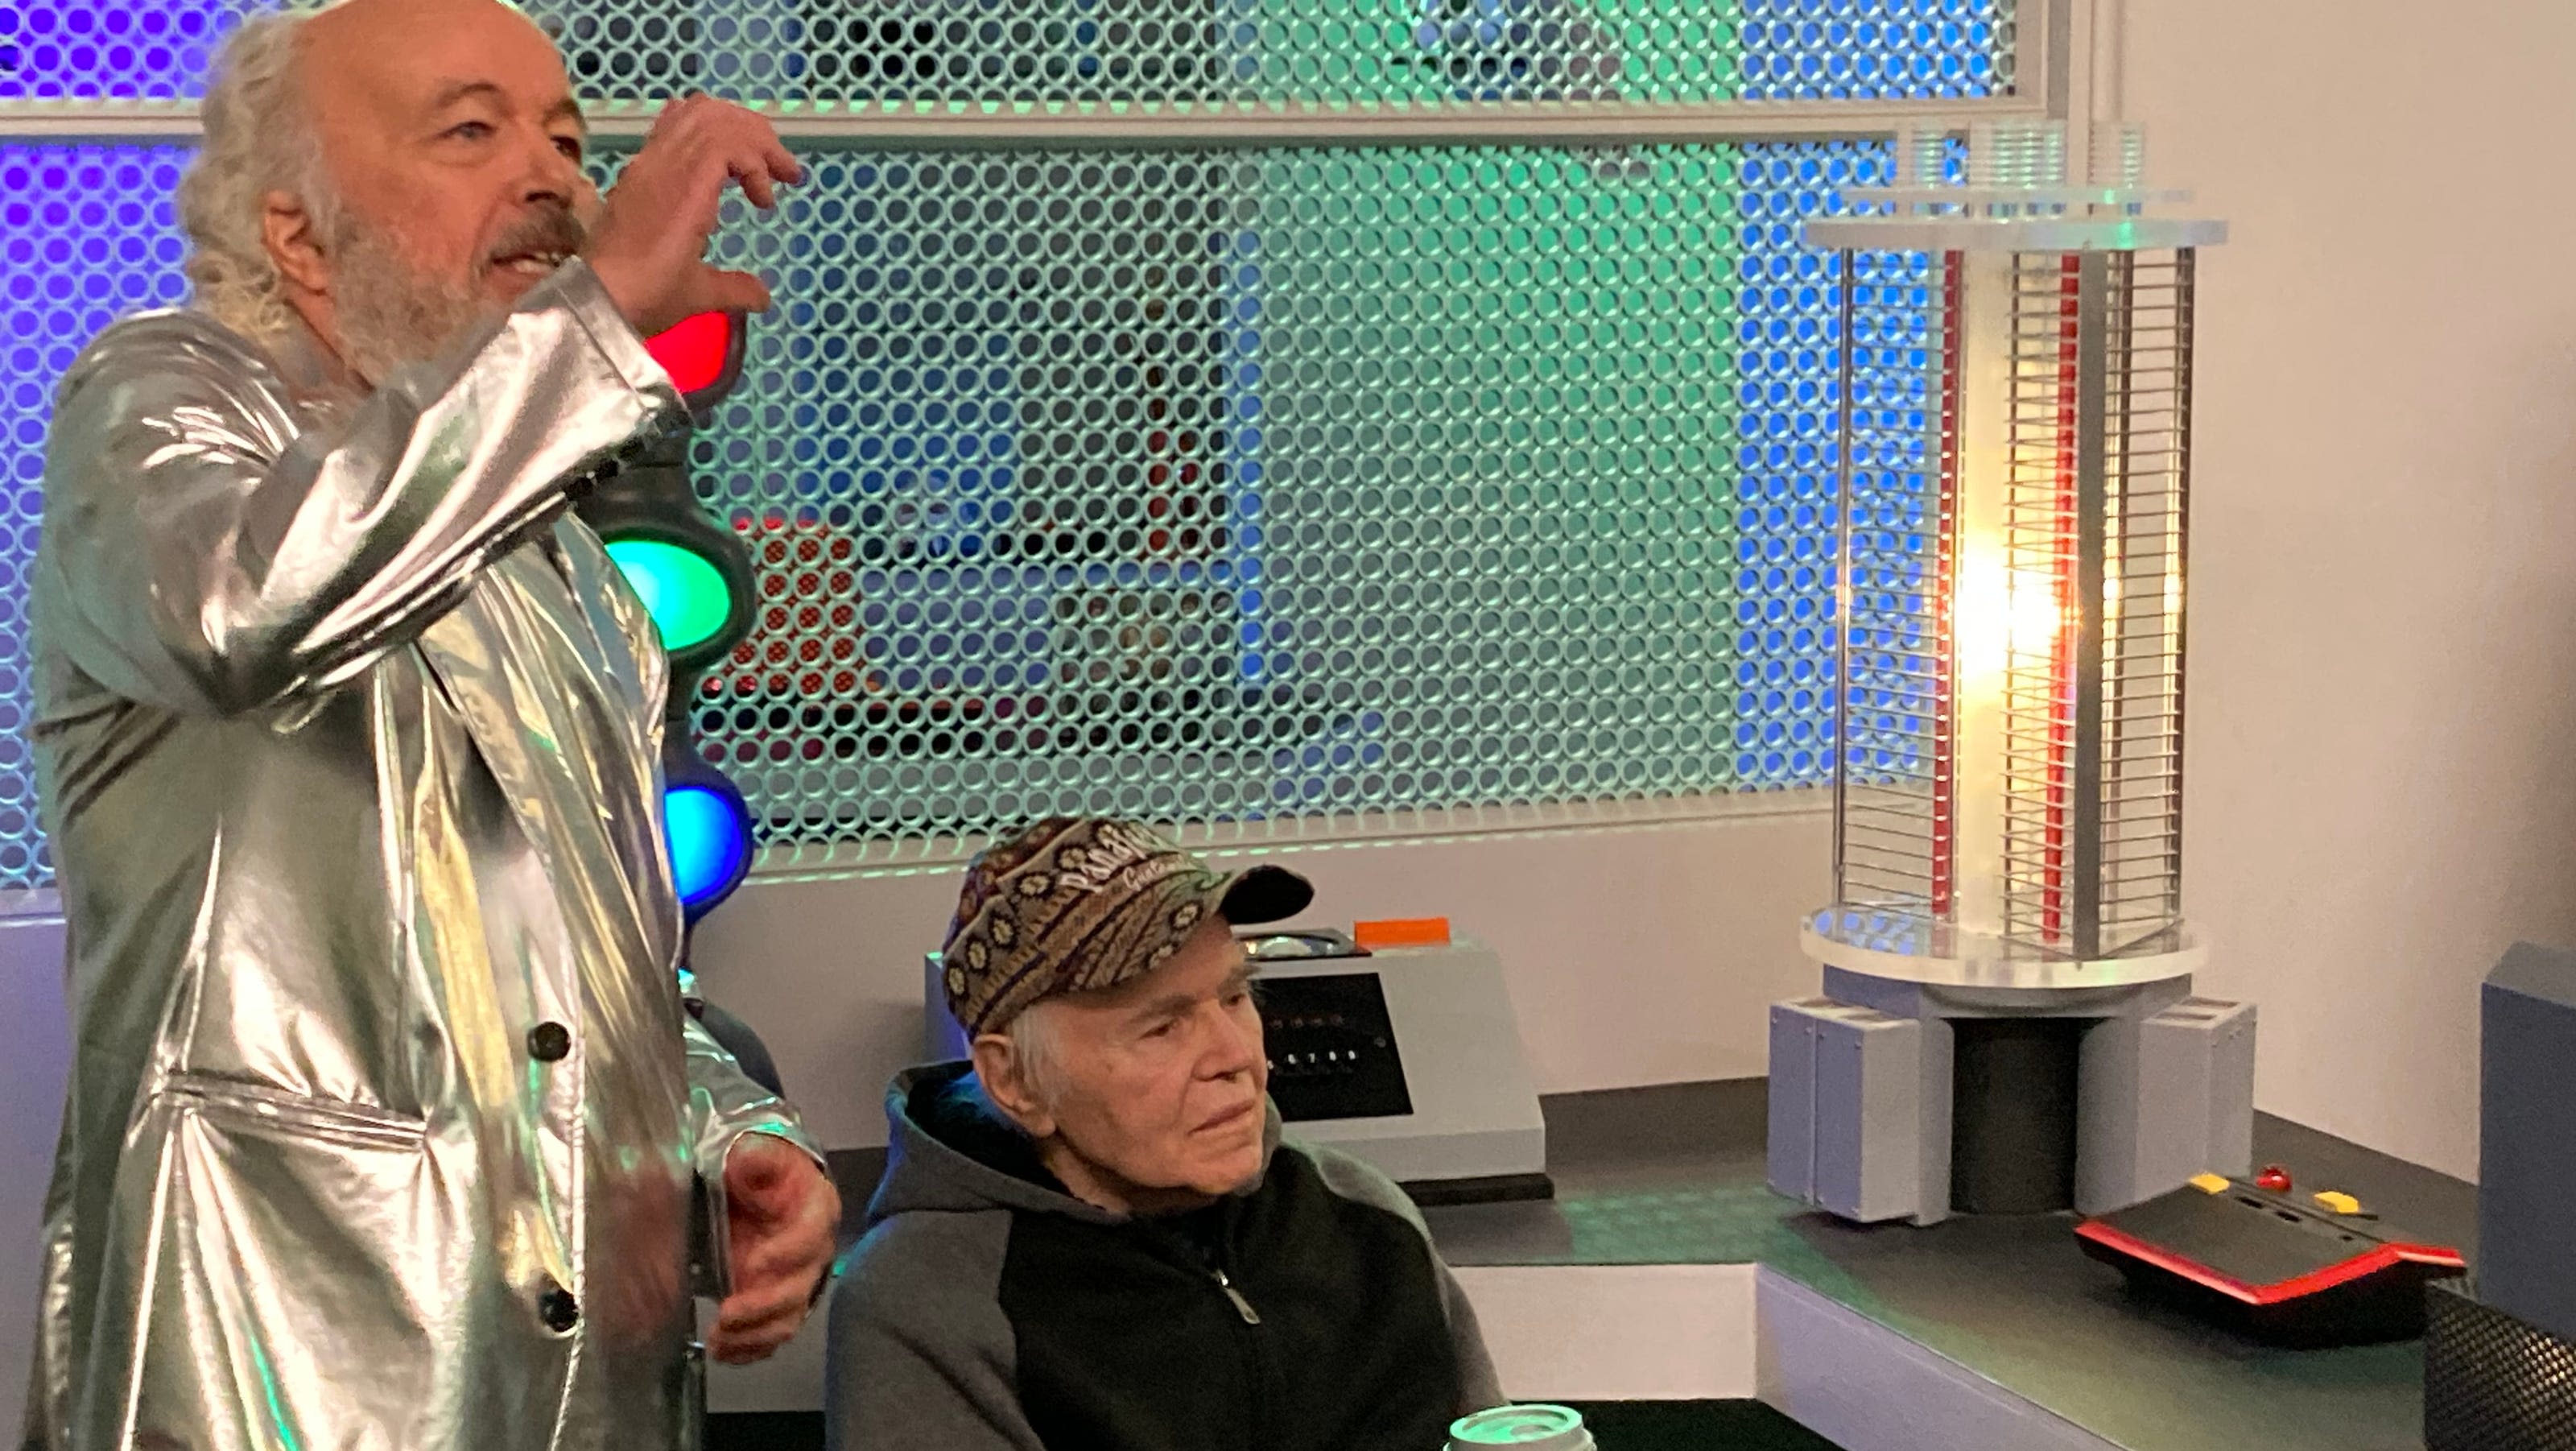 'Star Trek' actors LeVar Burton, Walter Koenig visit Trekonderoga in Champlain Valley